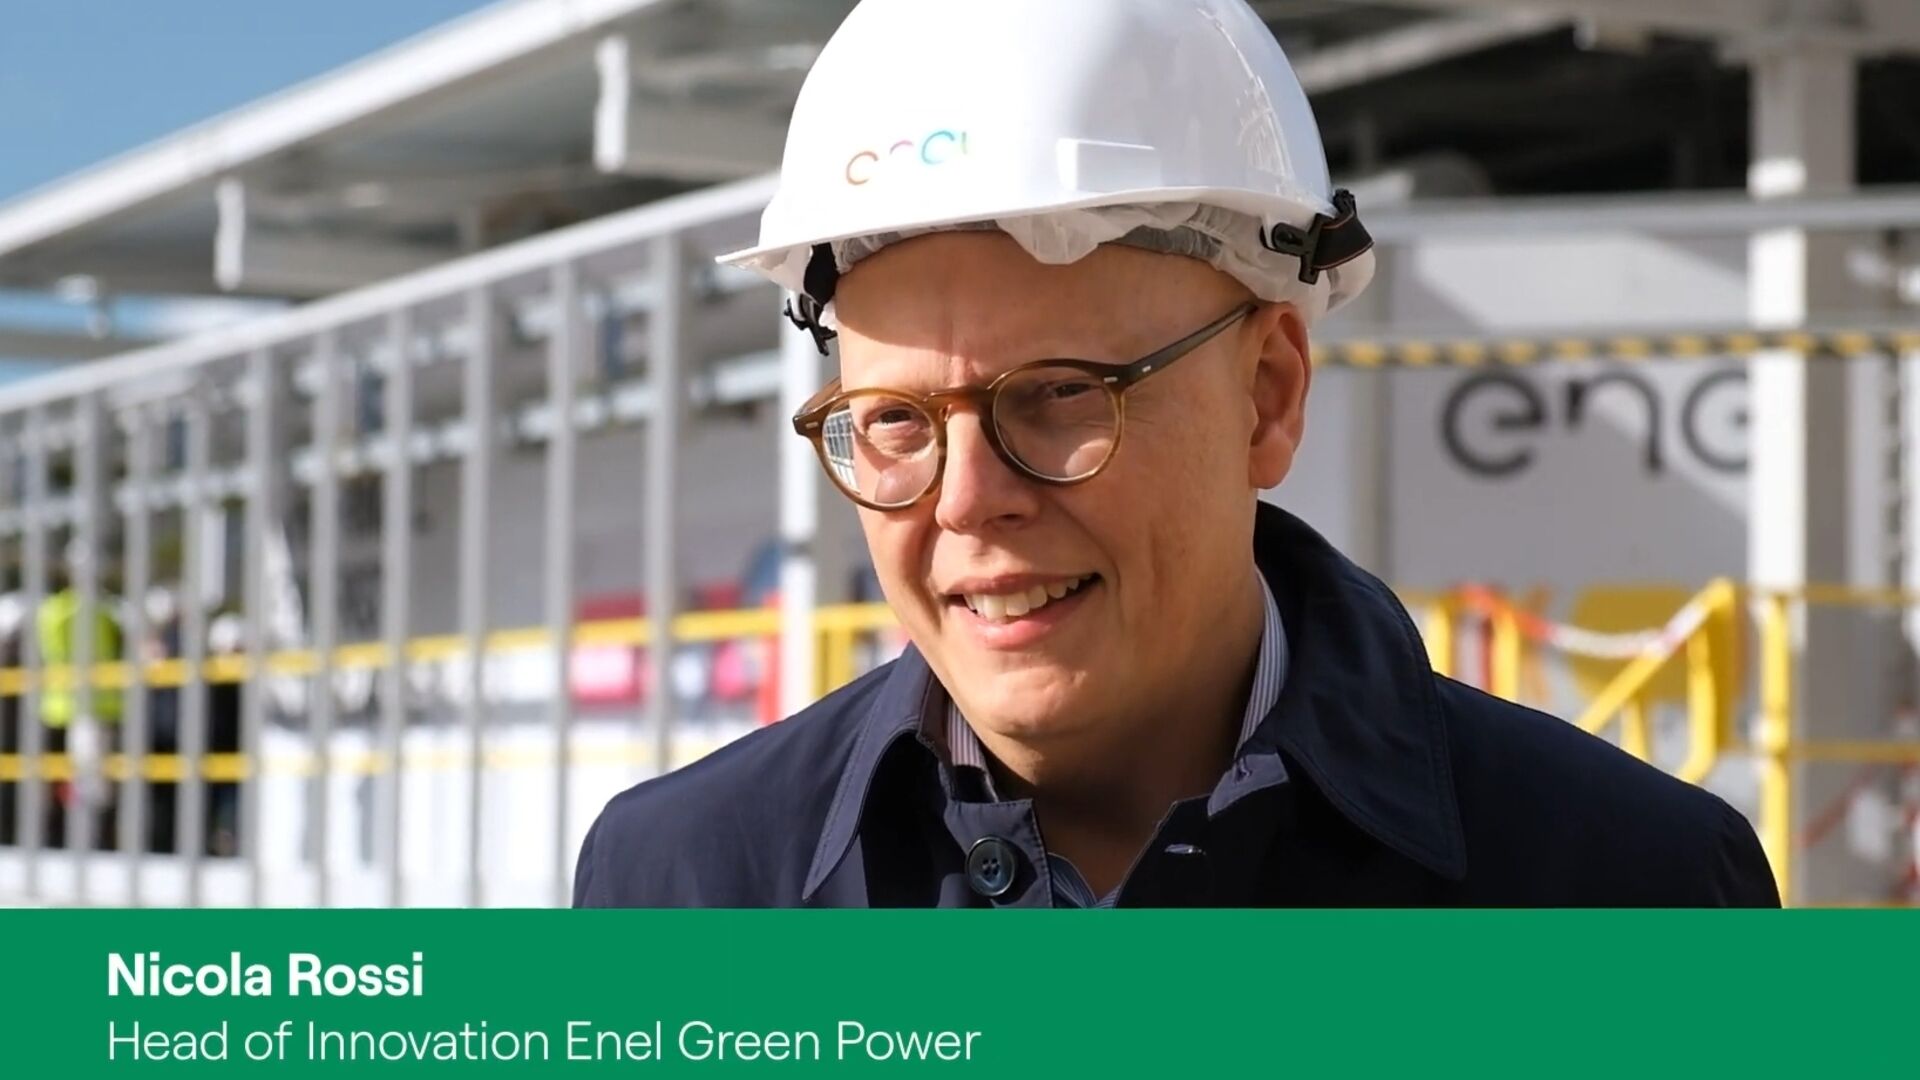 Energia: Nicola Rossi è Head of Innovation di Enel Green Power